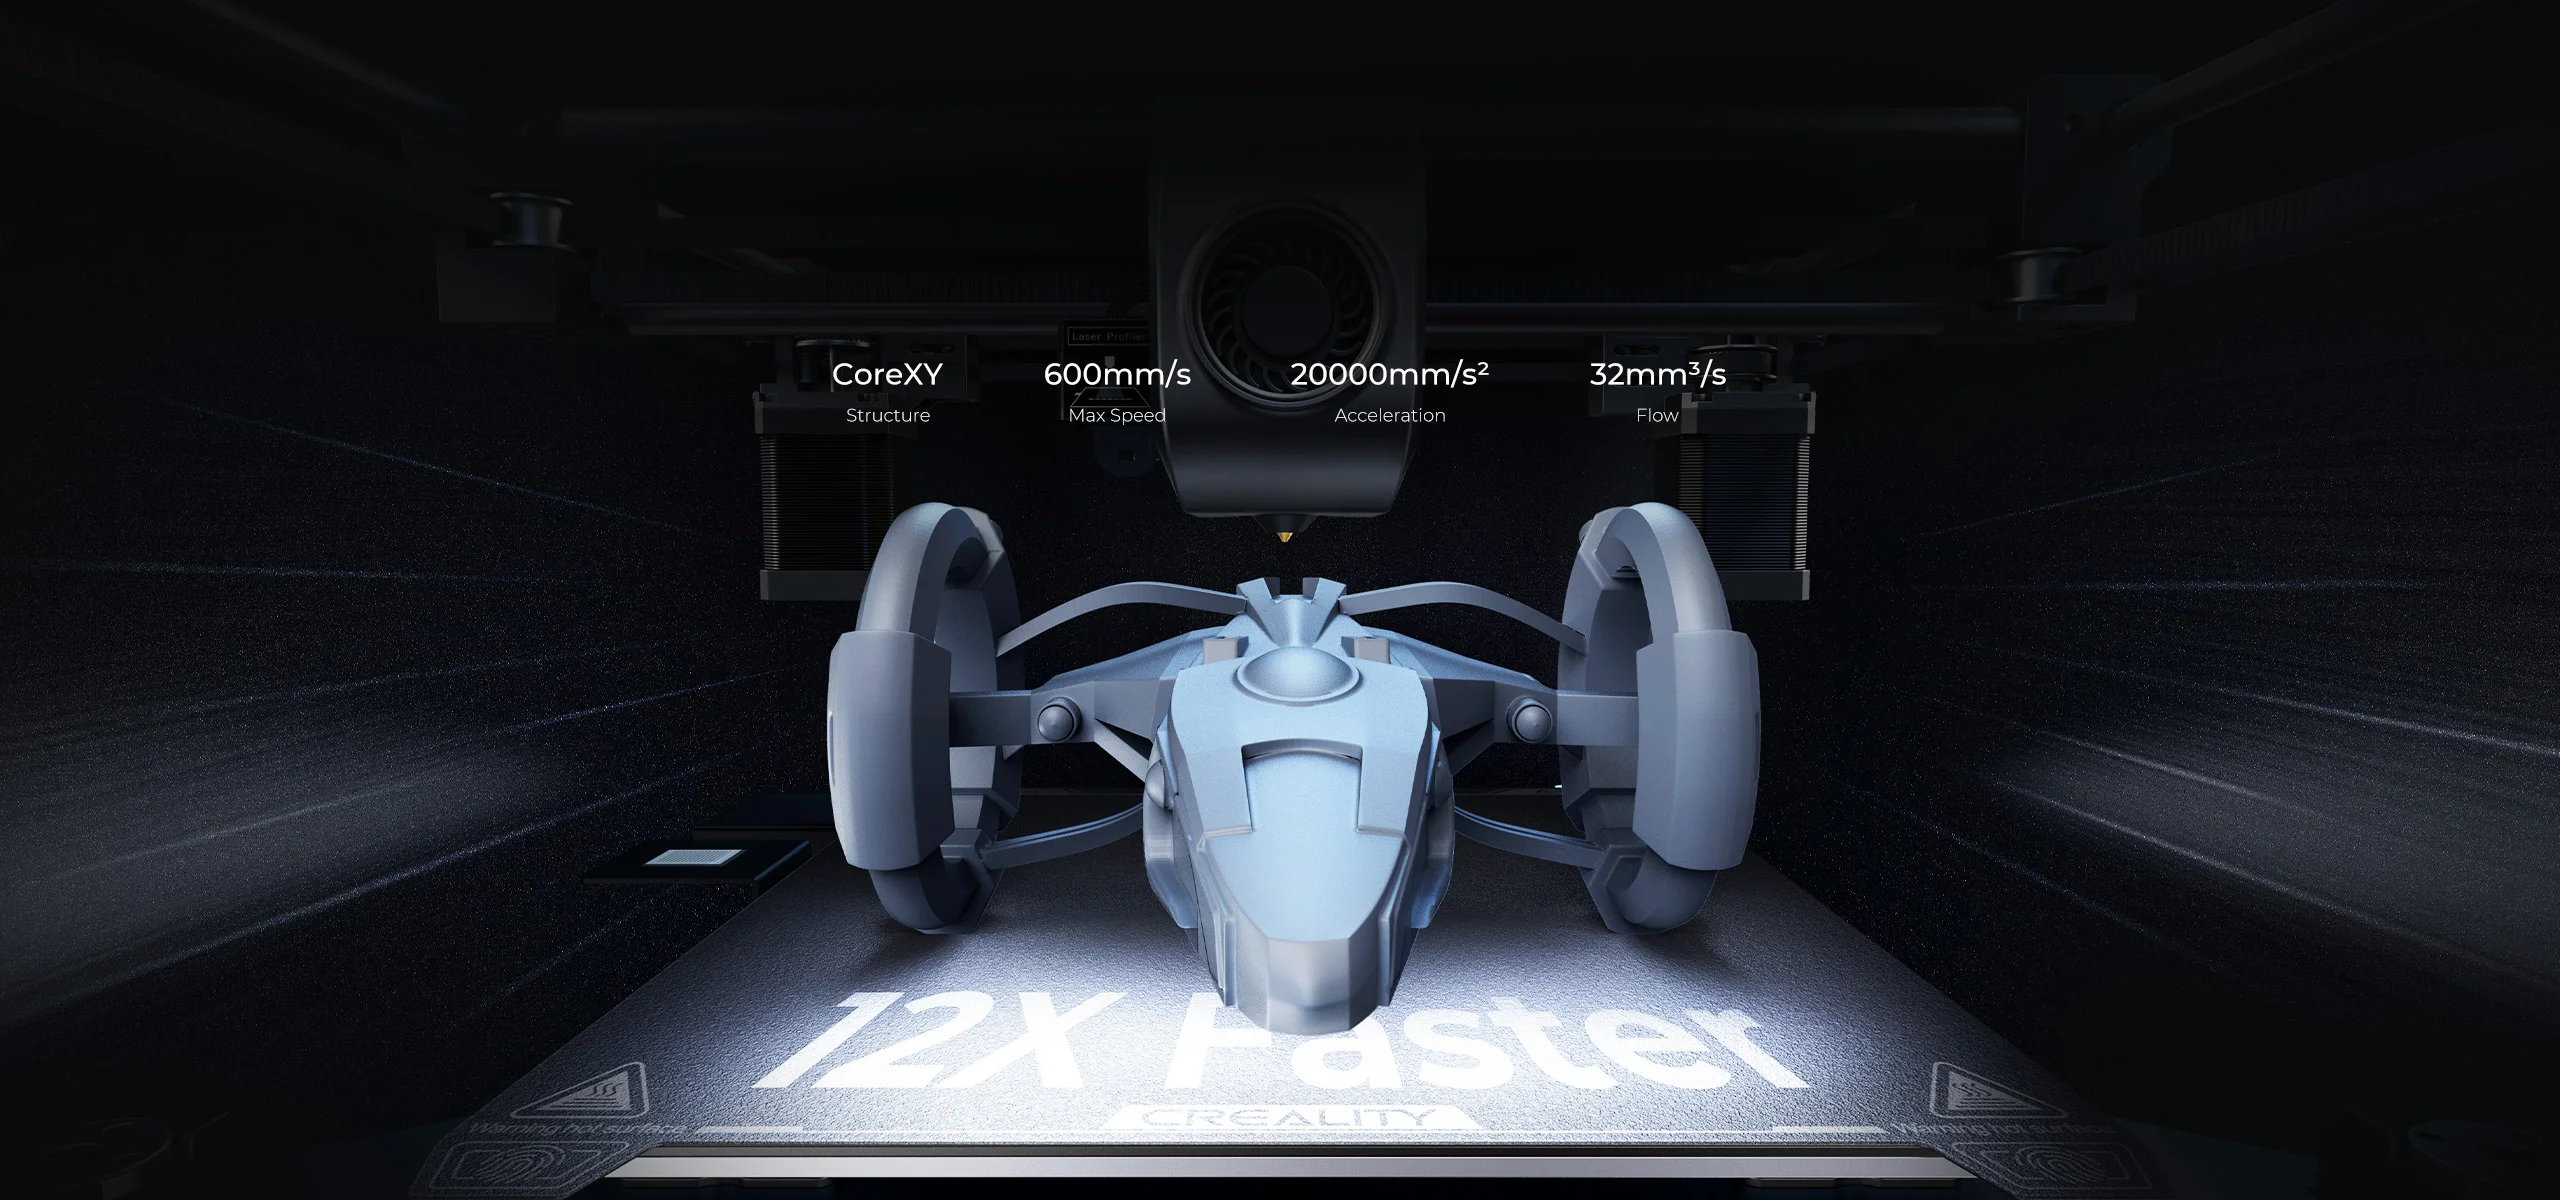 Impressora 3D Creality K1 Max